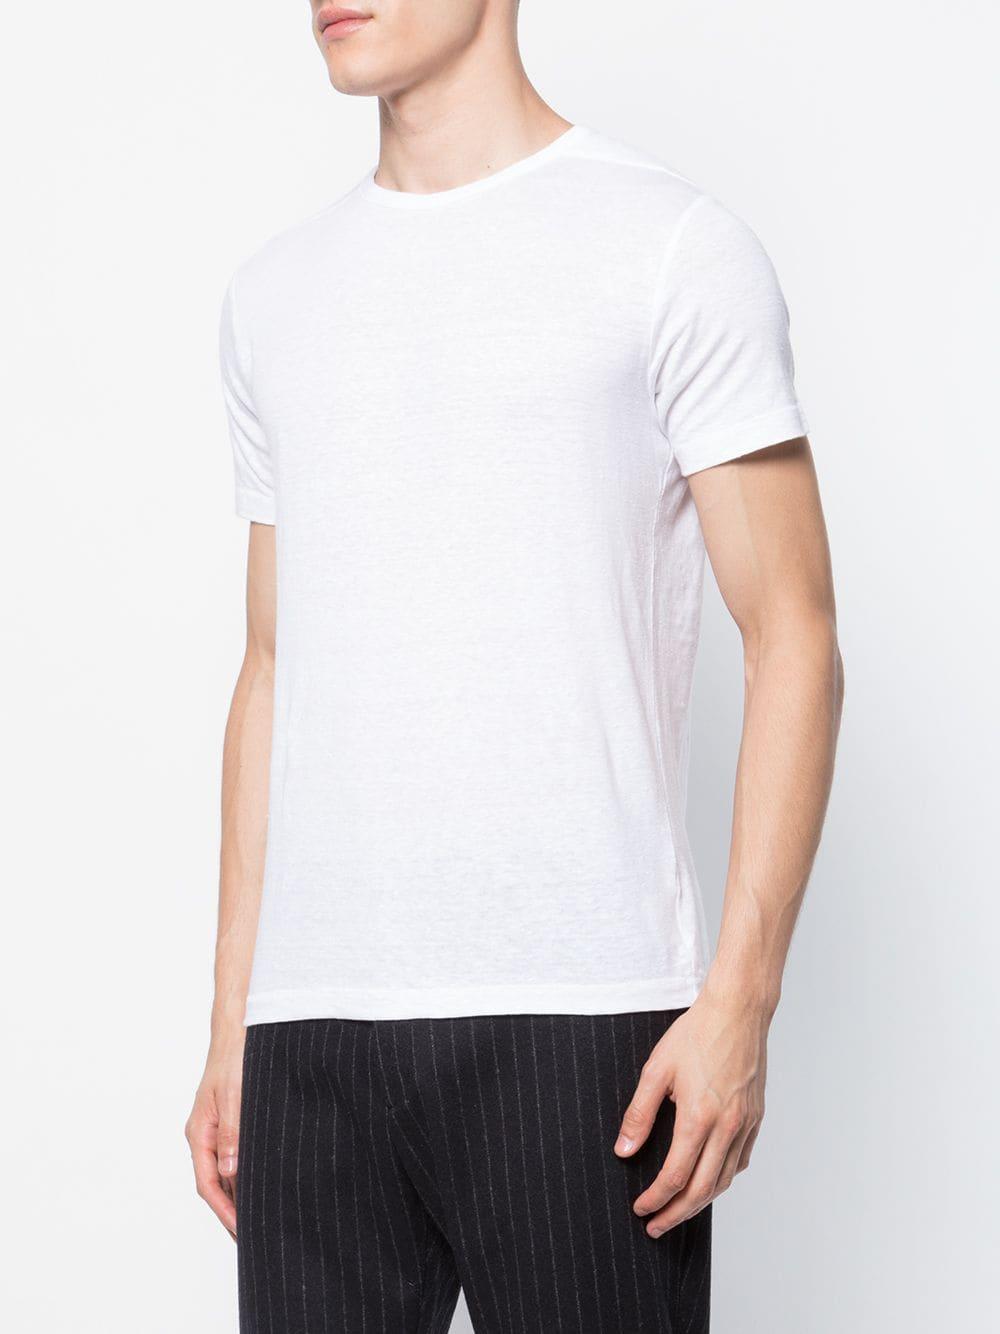 Homecore Linen Eole T-shirt in White for Men - Lyst